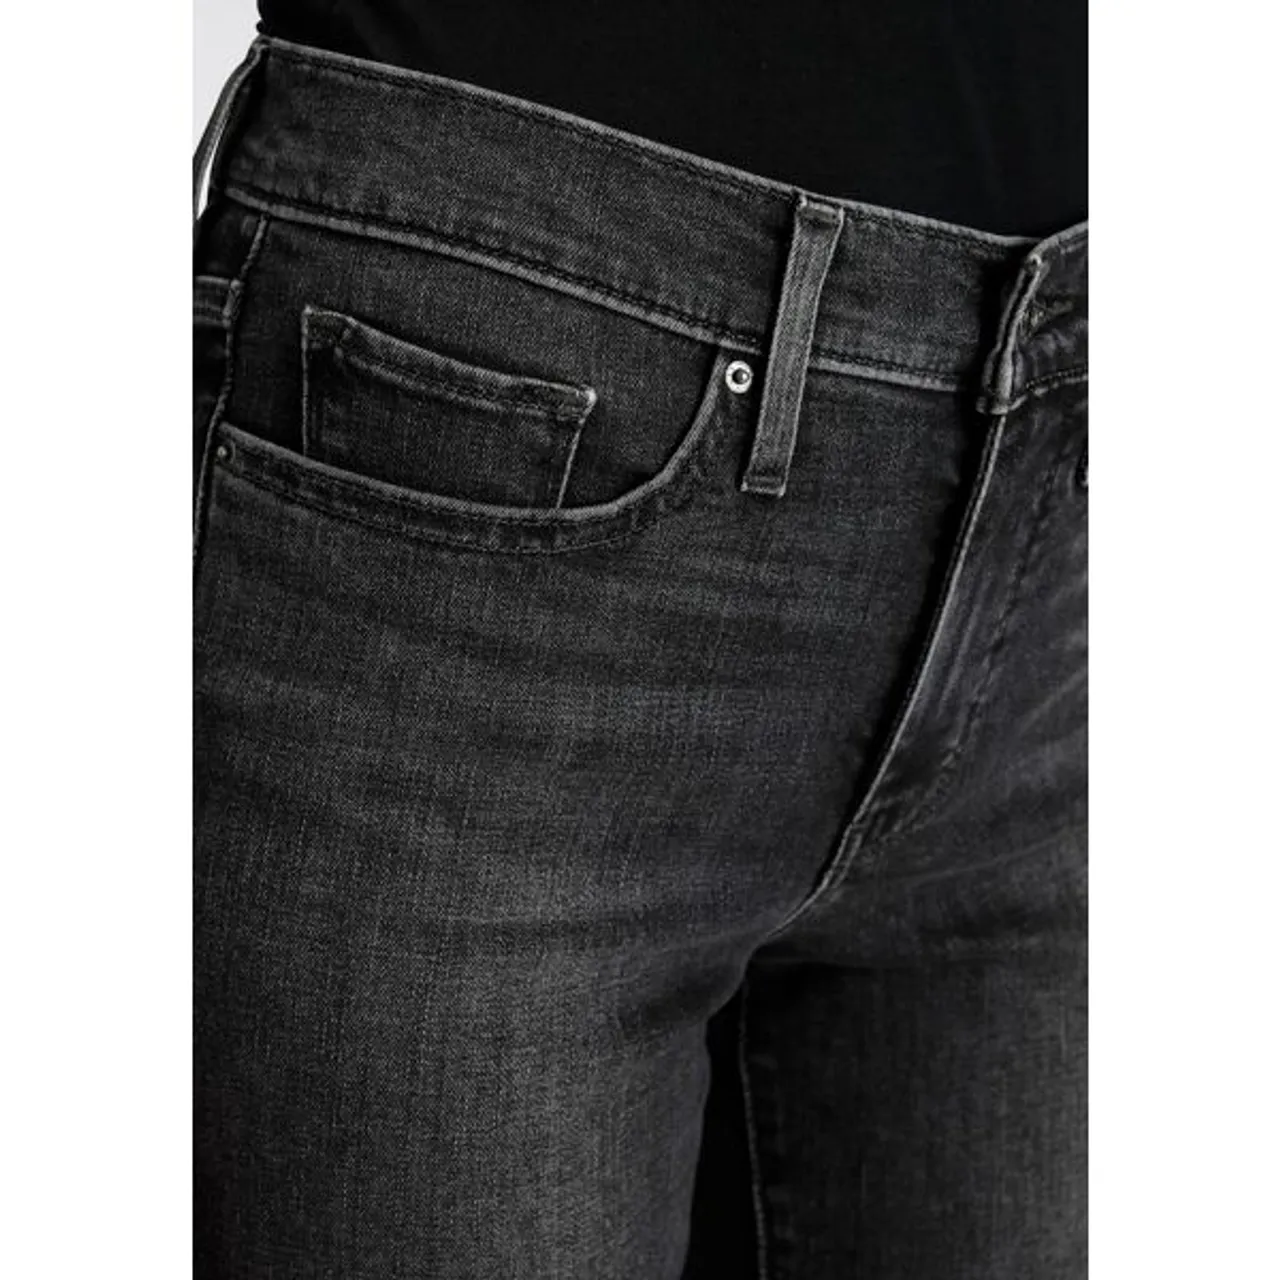 Slim-fit-Jeans LEVI'S "311 Shaping Skinny" Gr. 27, Länge 28, schwarz (black worn in) Damen Jeans Röhrenjeans im 5-Pocket-Stil Bestseller